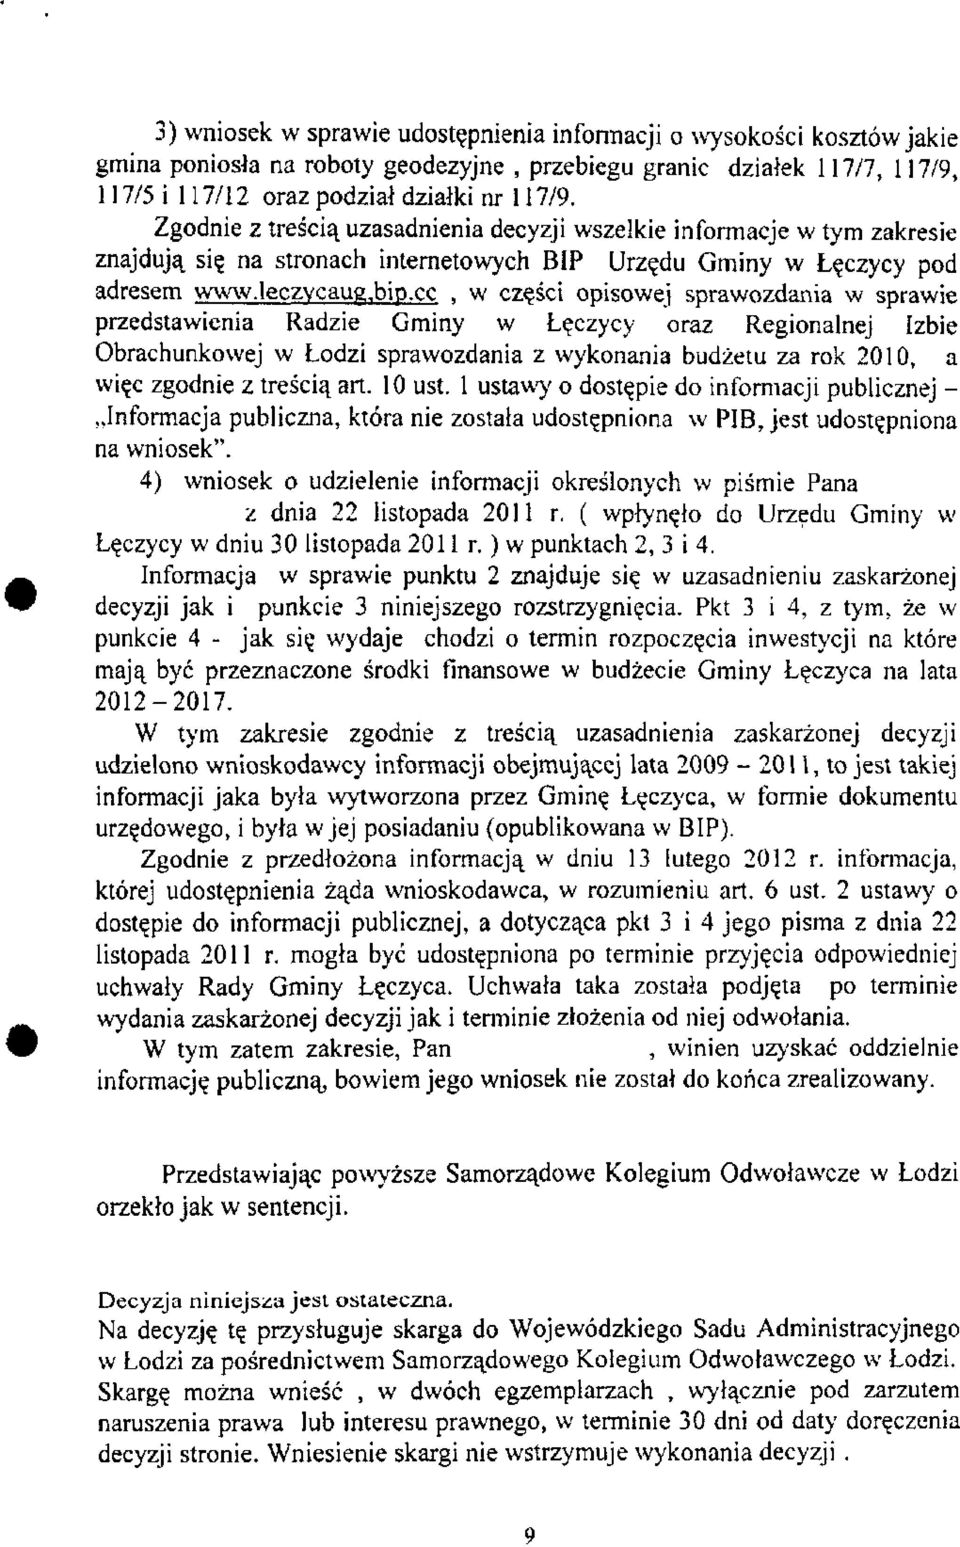 cc, w części opisowej sprawozdania w sprawie przedstawienia Radzie Gminy w Łęczycy oraz Regionalnej Izbie Obrachunkowej w Łodzi sprawozdania z wykonania budżetu za rok 2010, a więc zgodnie z treścią